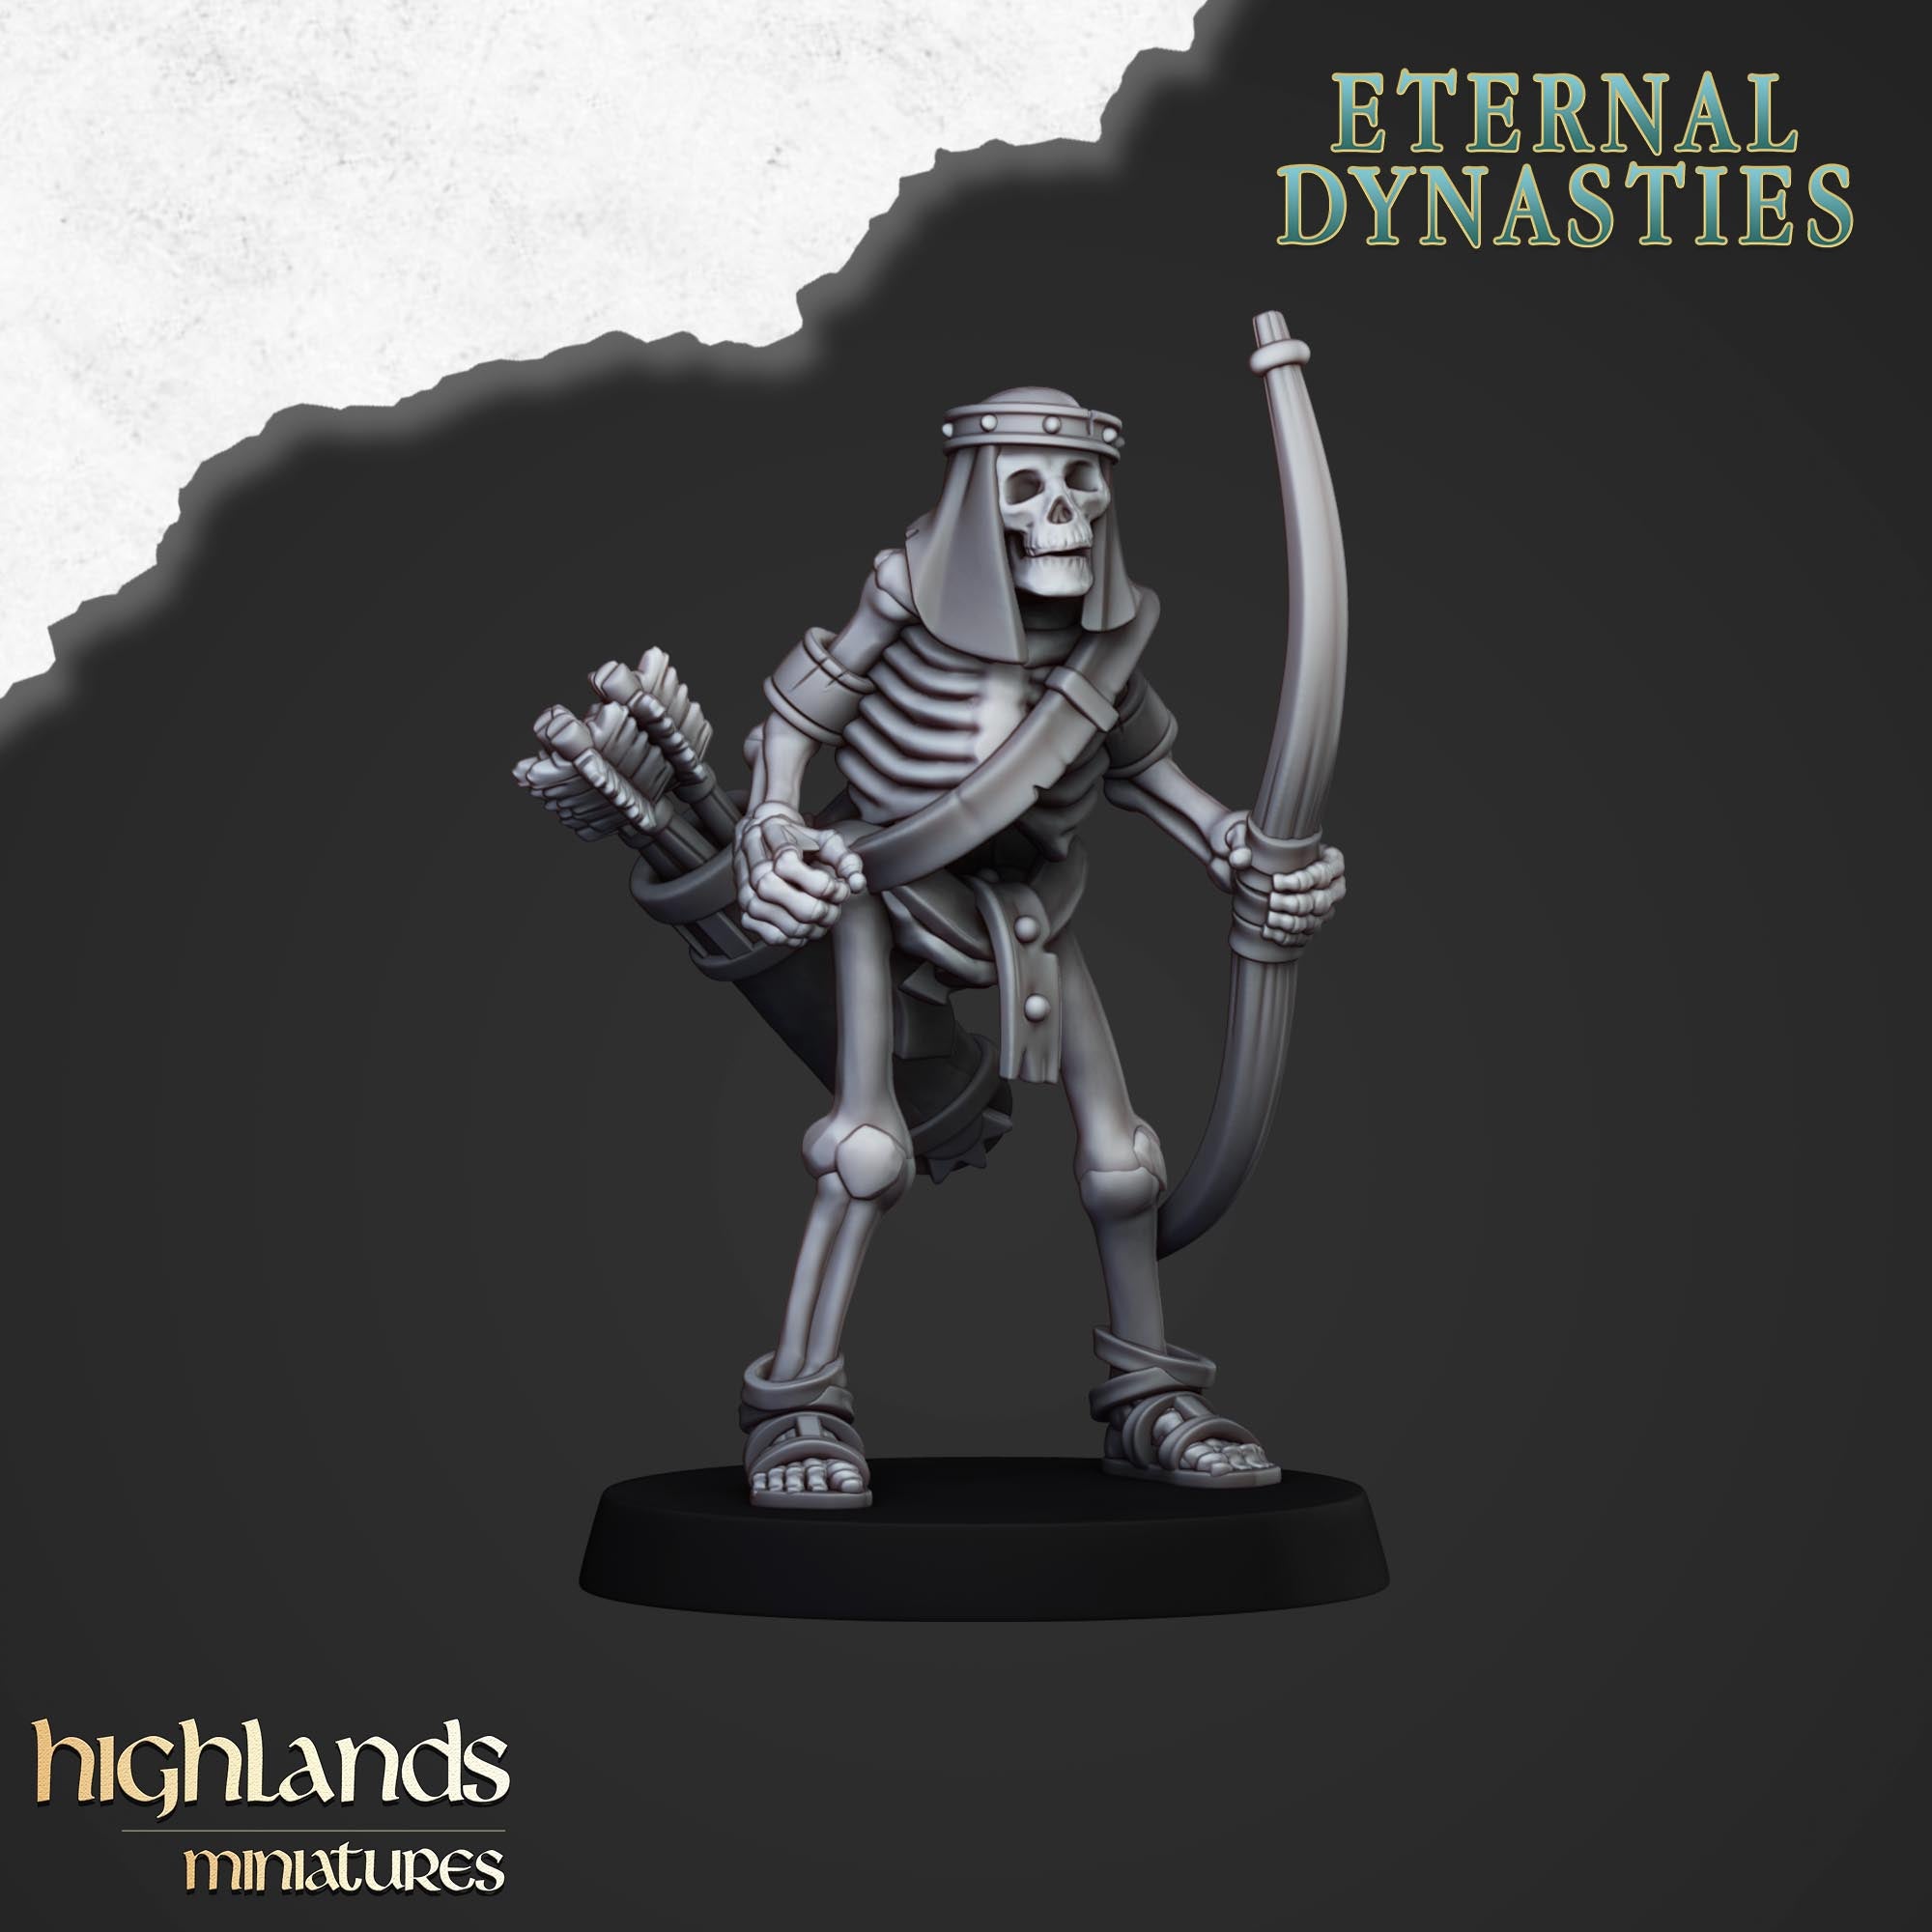 Arqueros esqueleto antiguos (x10) - Dinastías eternas | Miniaturas de las Tierras Altas